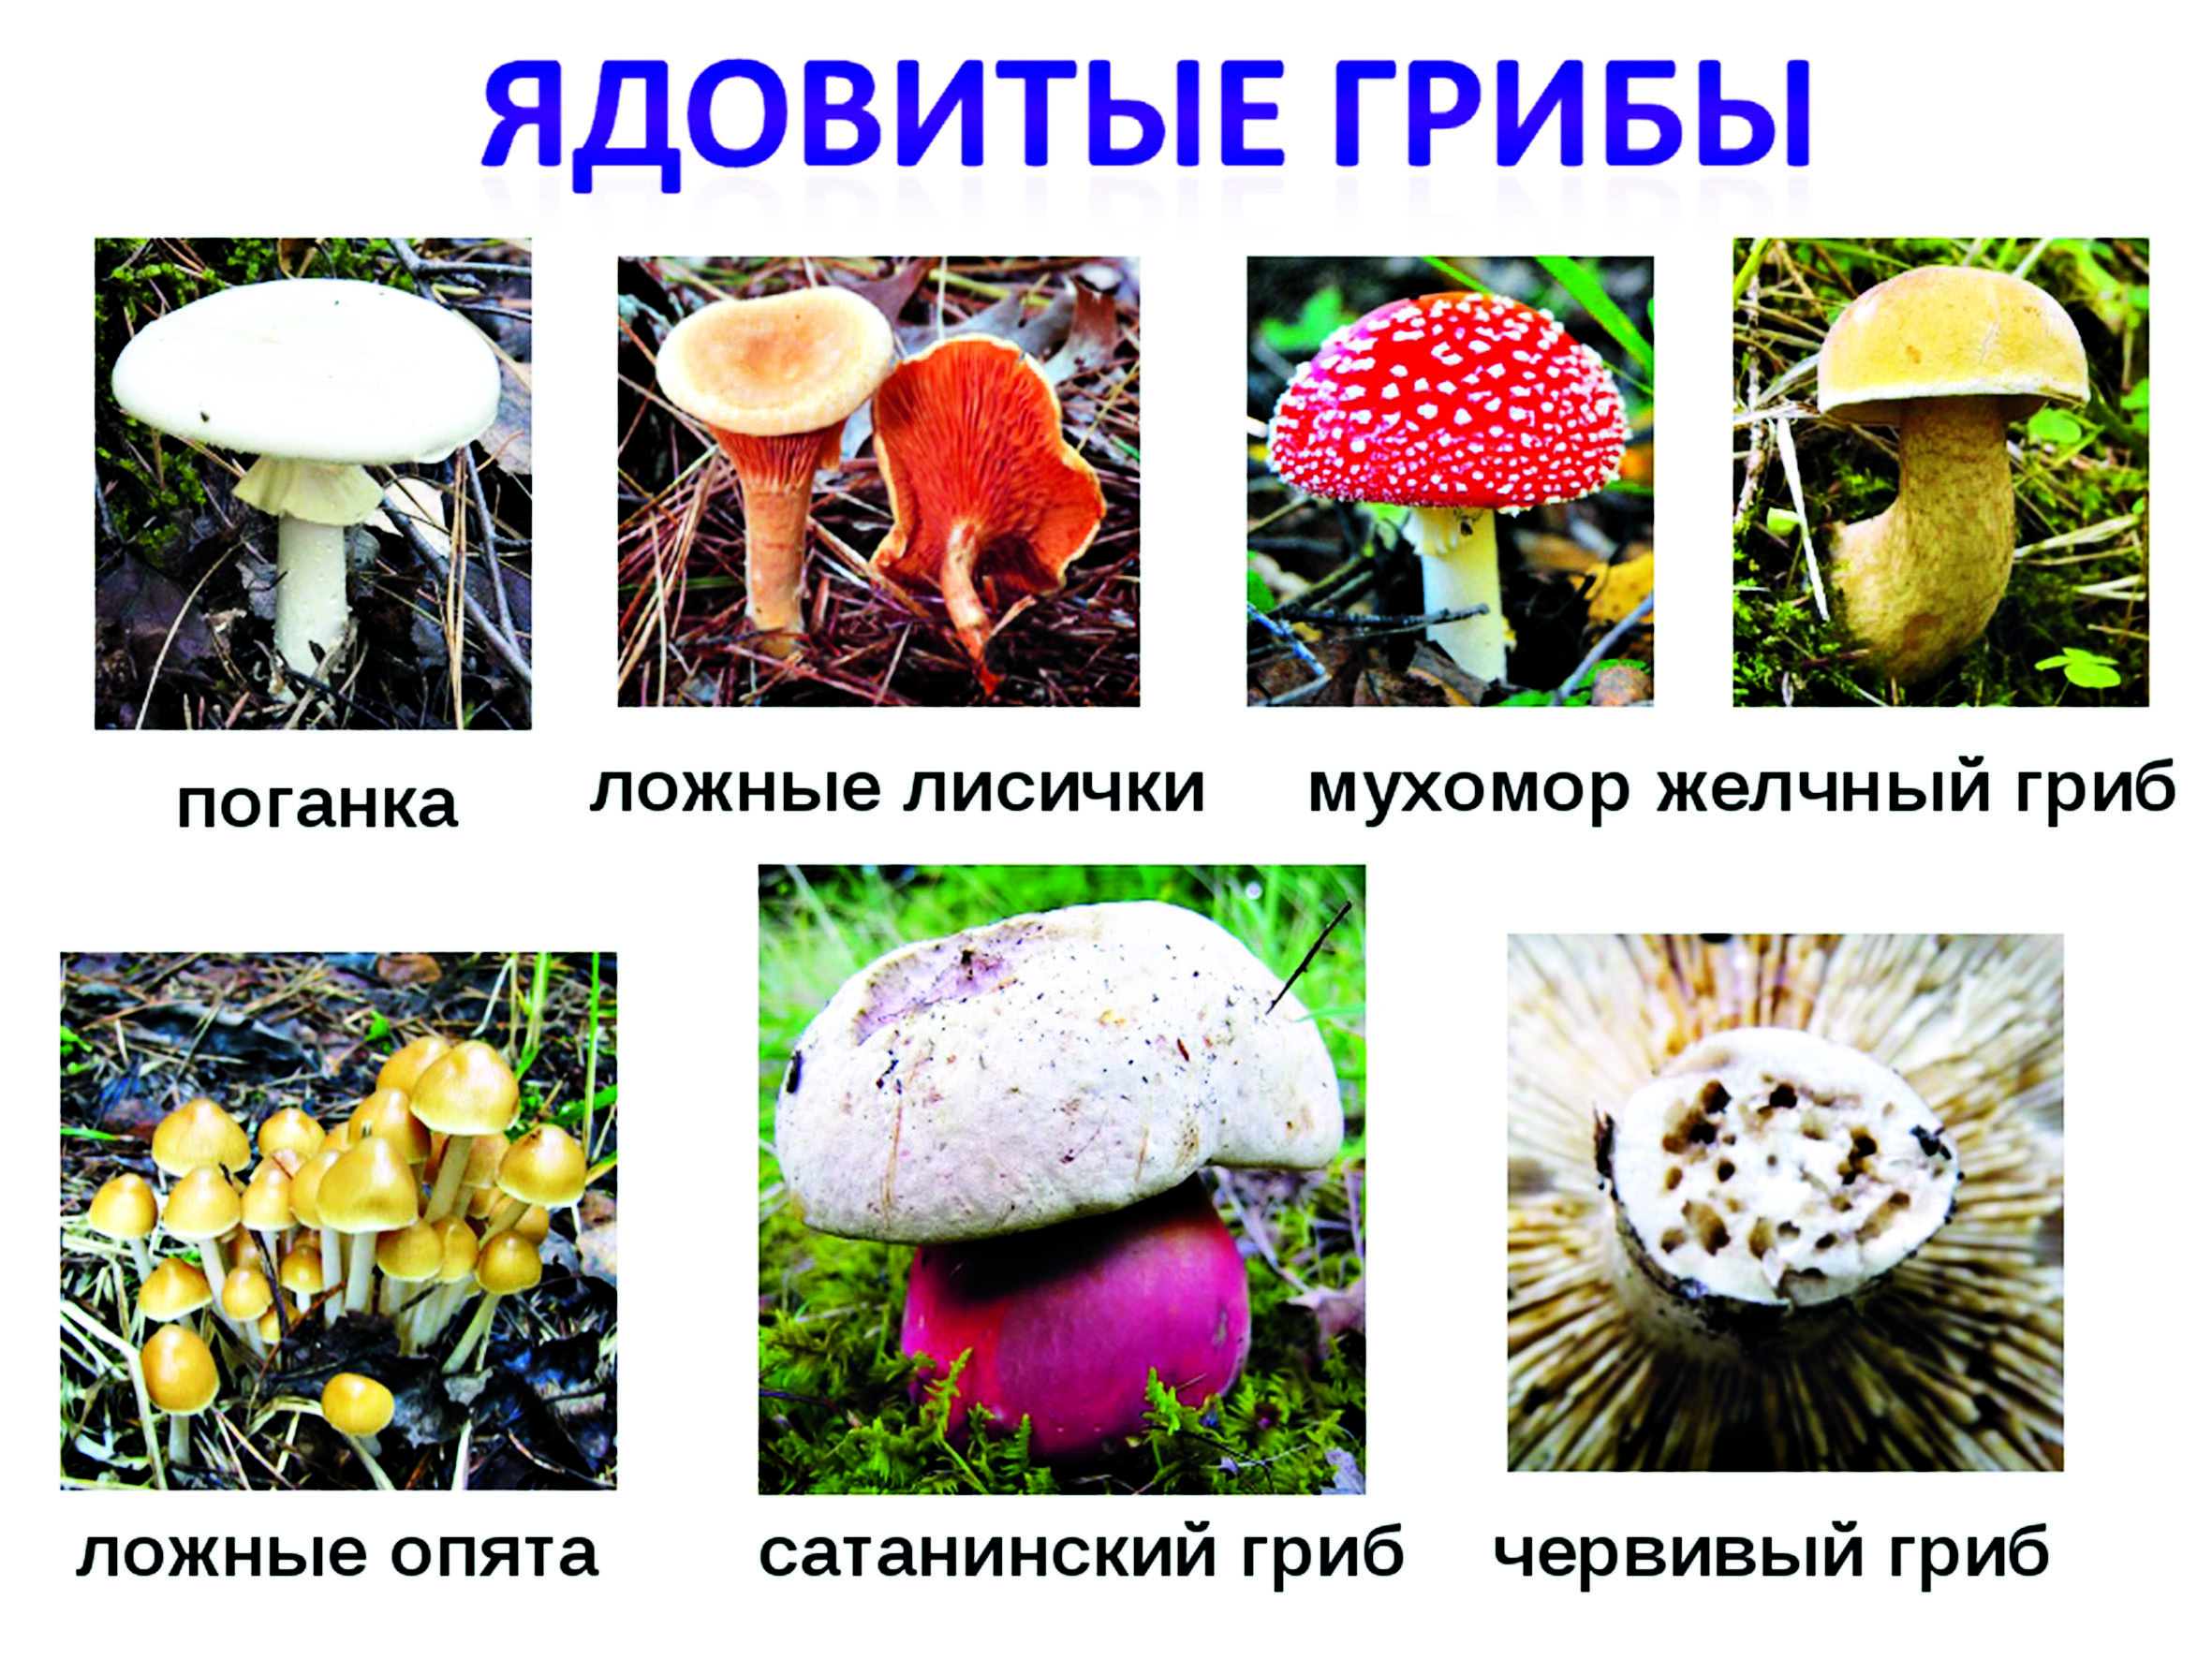 Грибы в кемерово и кемеровской области в 2023 году: фото, описания и названия съедобных и ядовитых видов на карте грибных мест